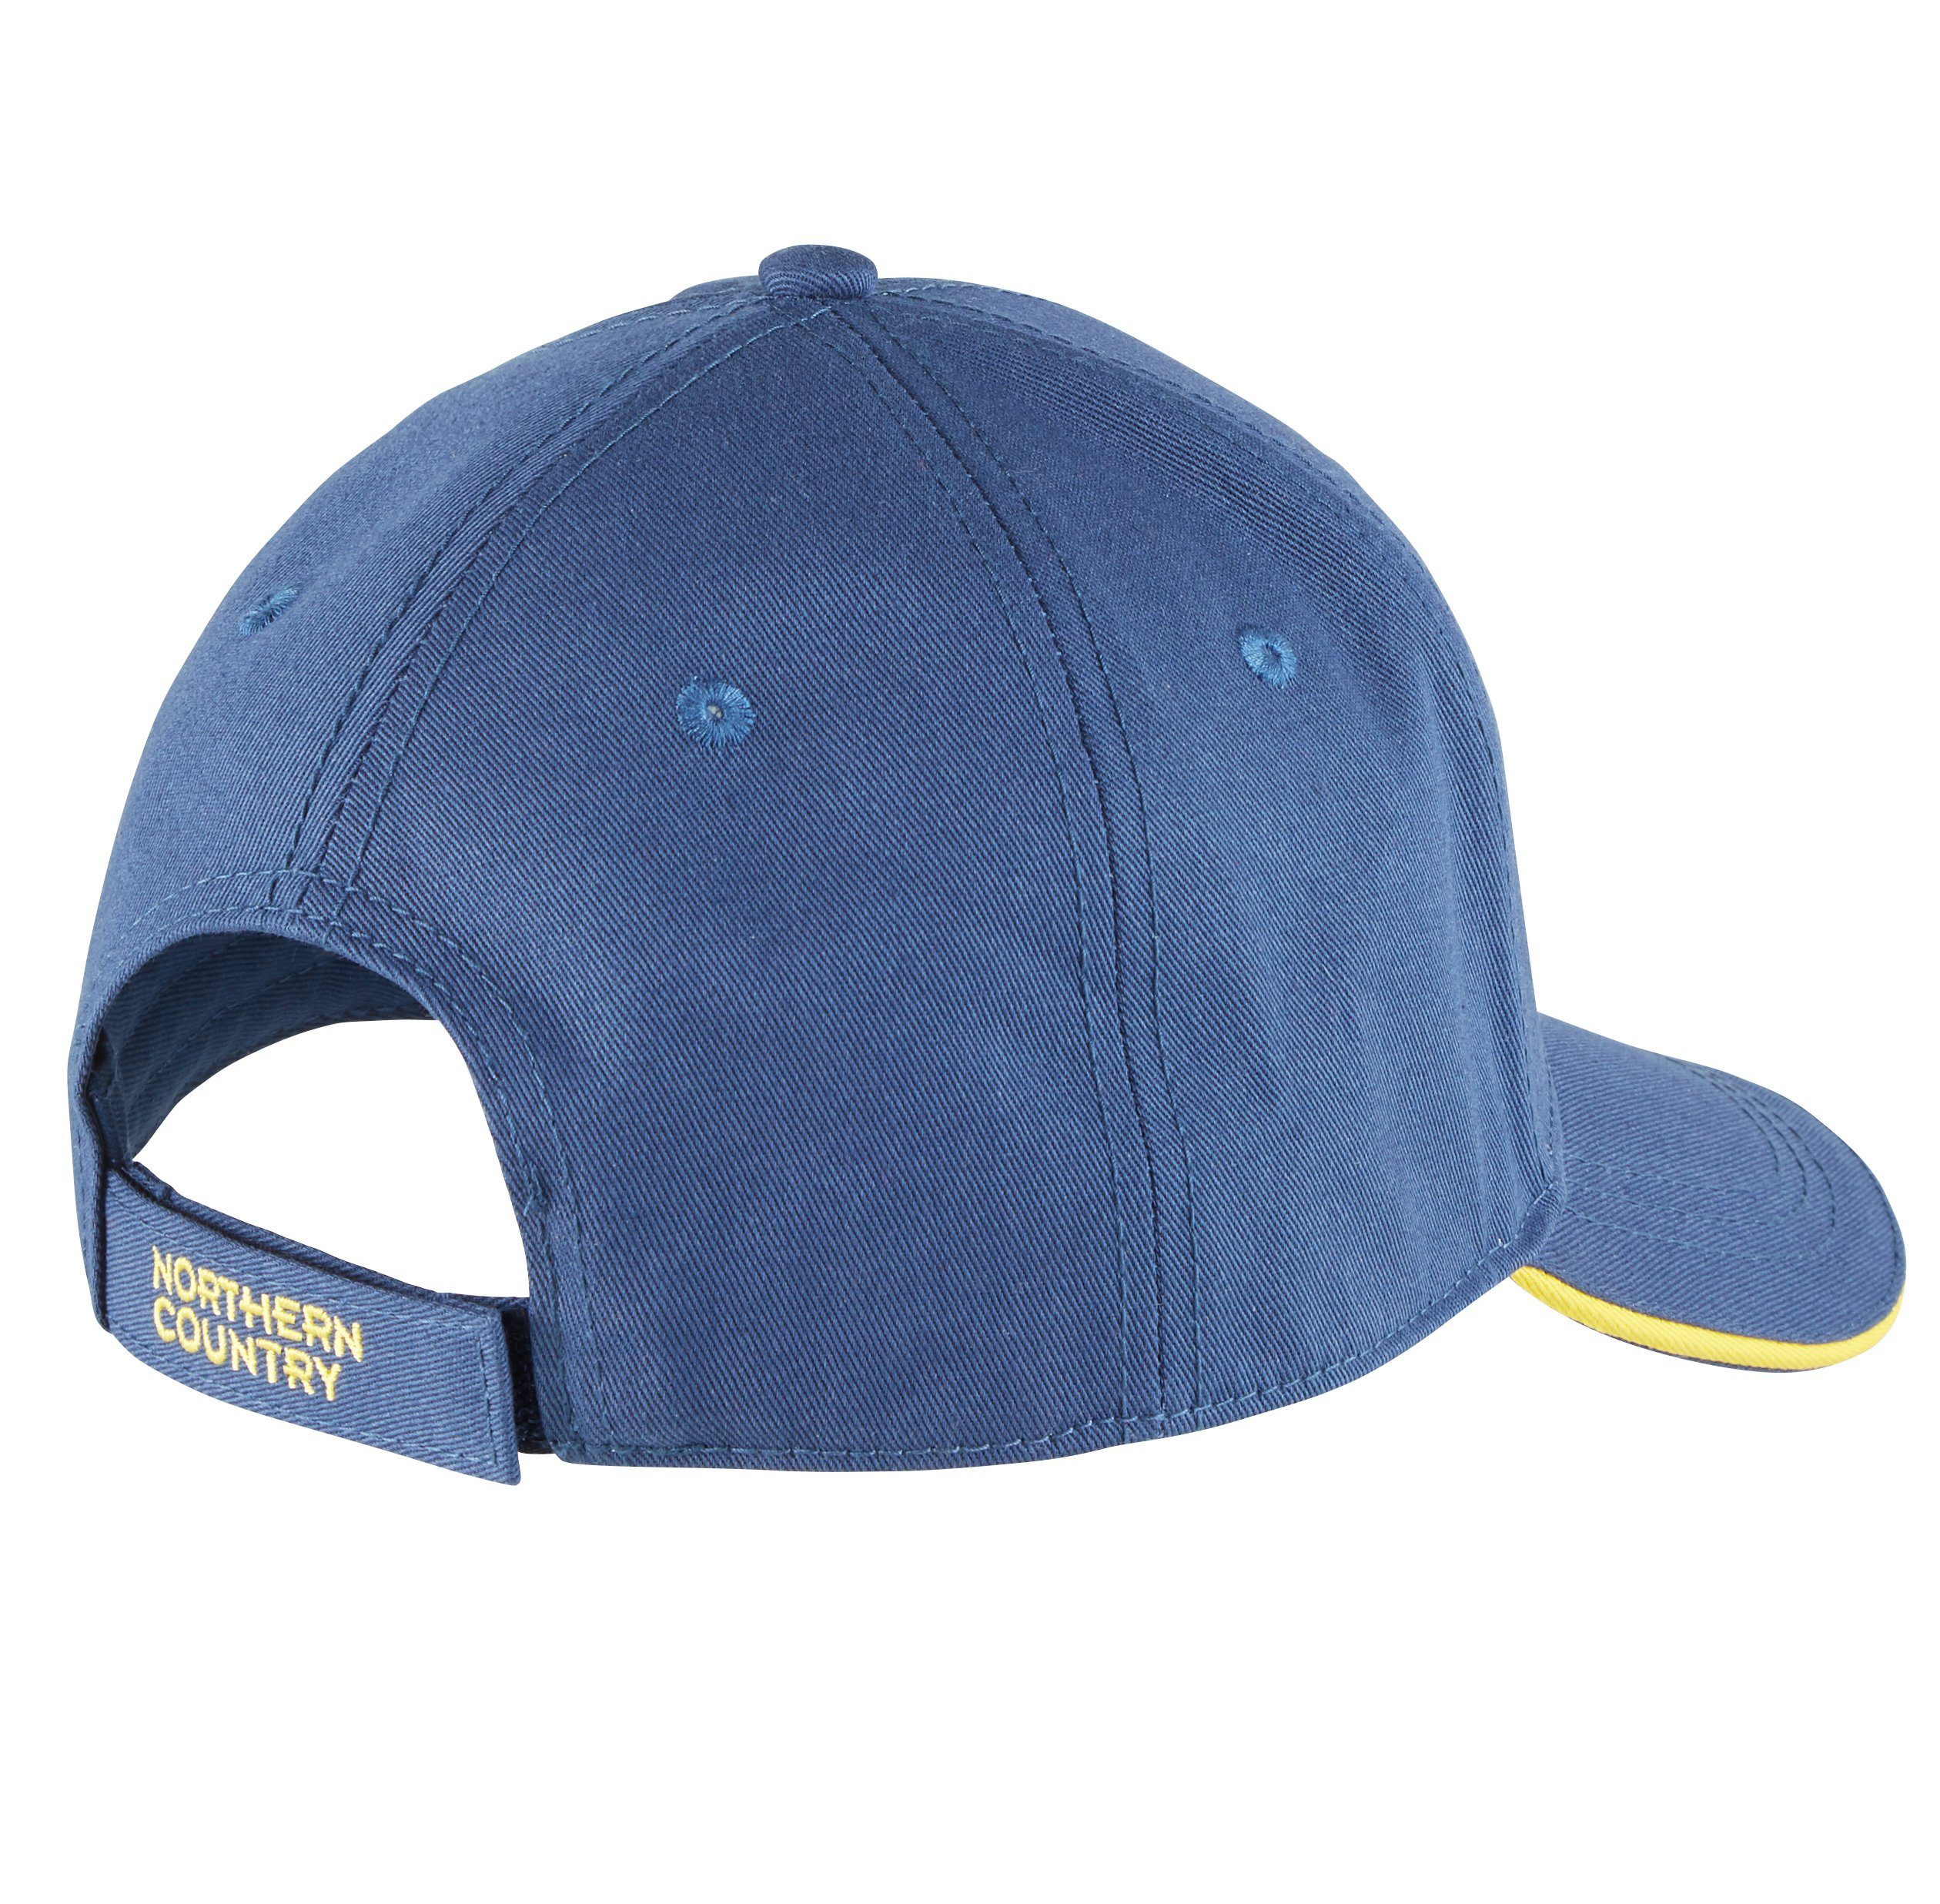 Northern Country Snapback Cap größenverstellbar, beim Arbeiten Blue Sonne vor Teal Wing schützt